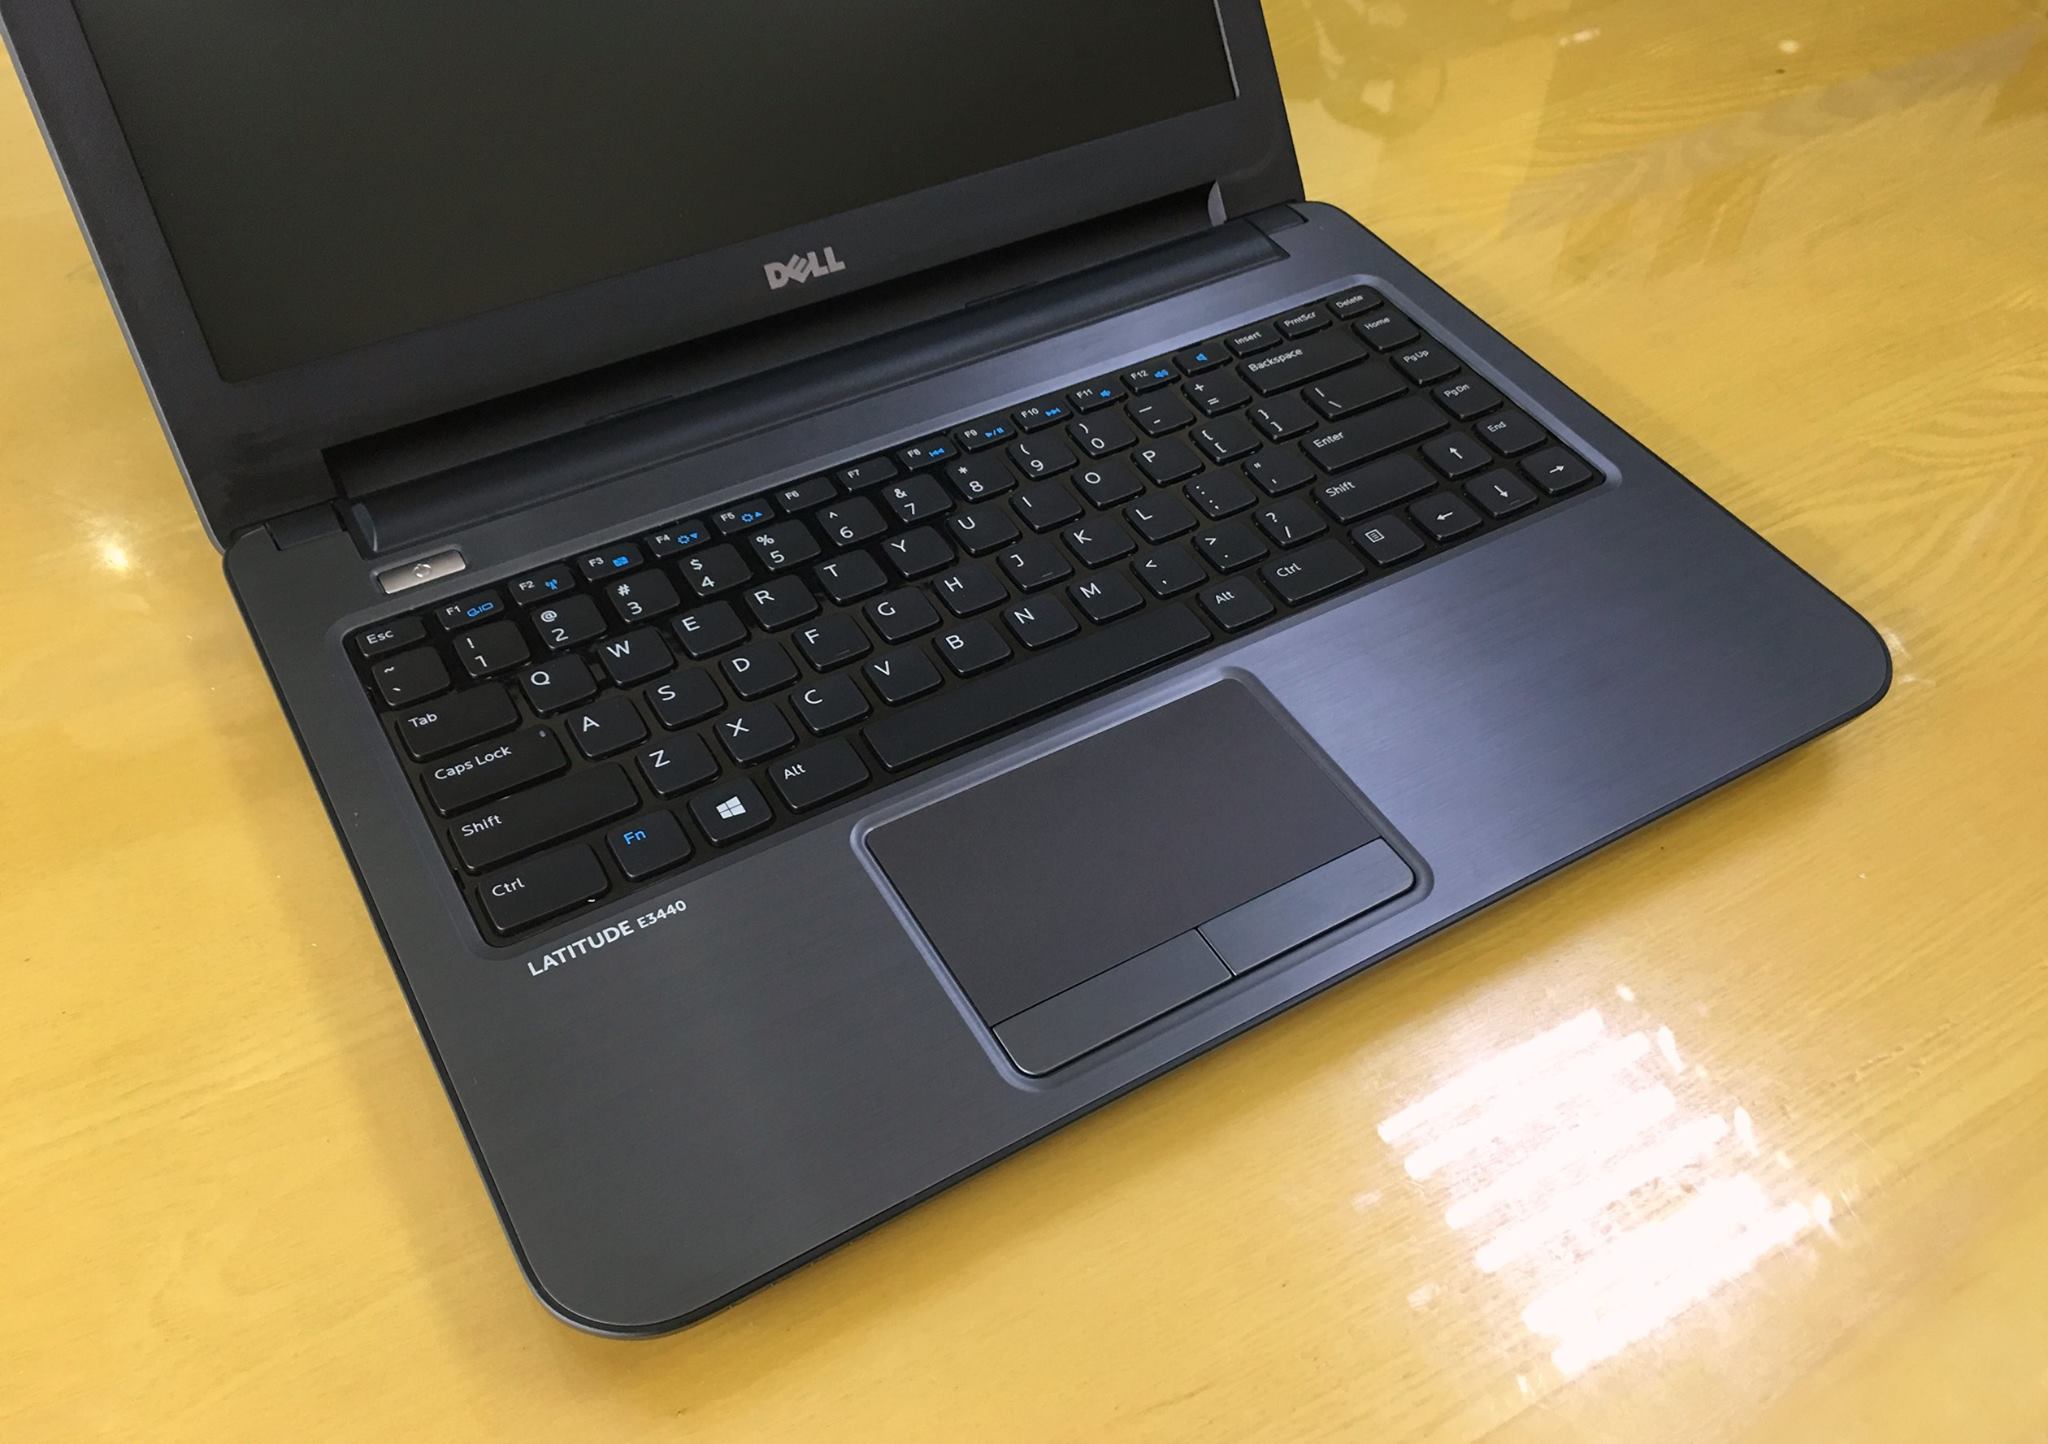 Laptop Dell Latitide E3440-6.jpg